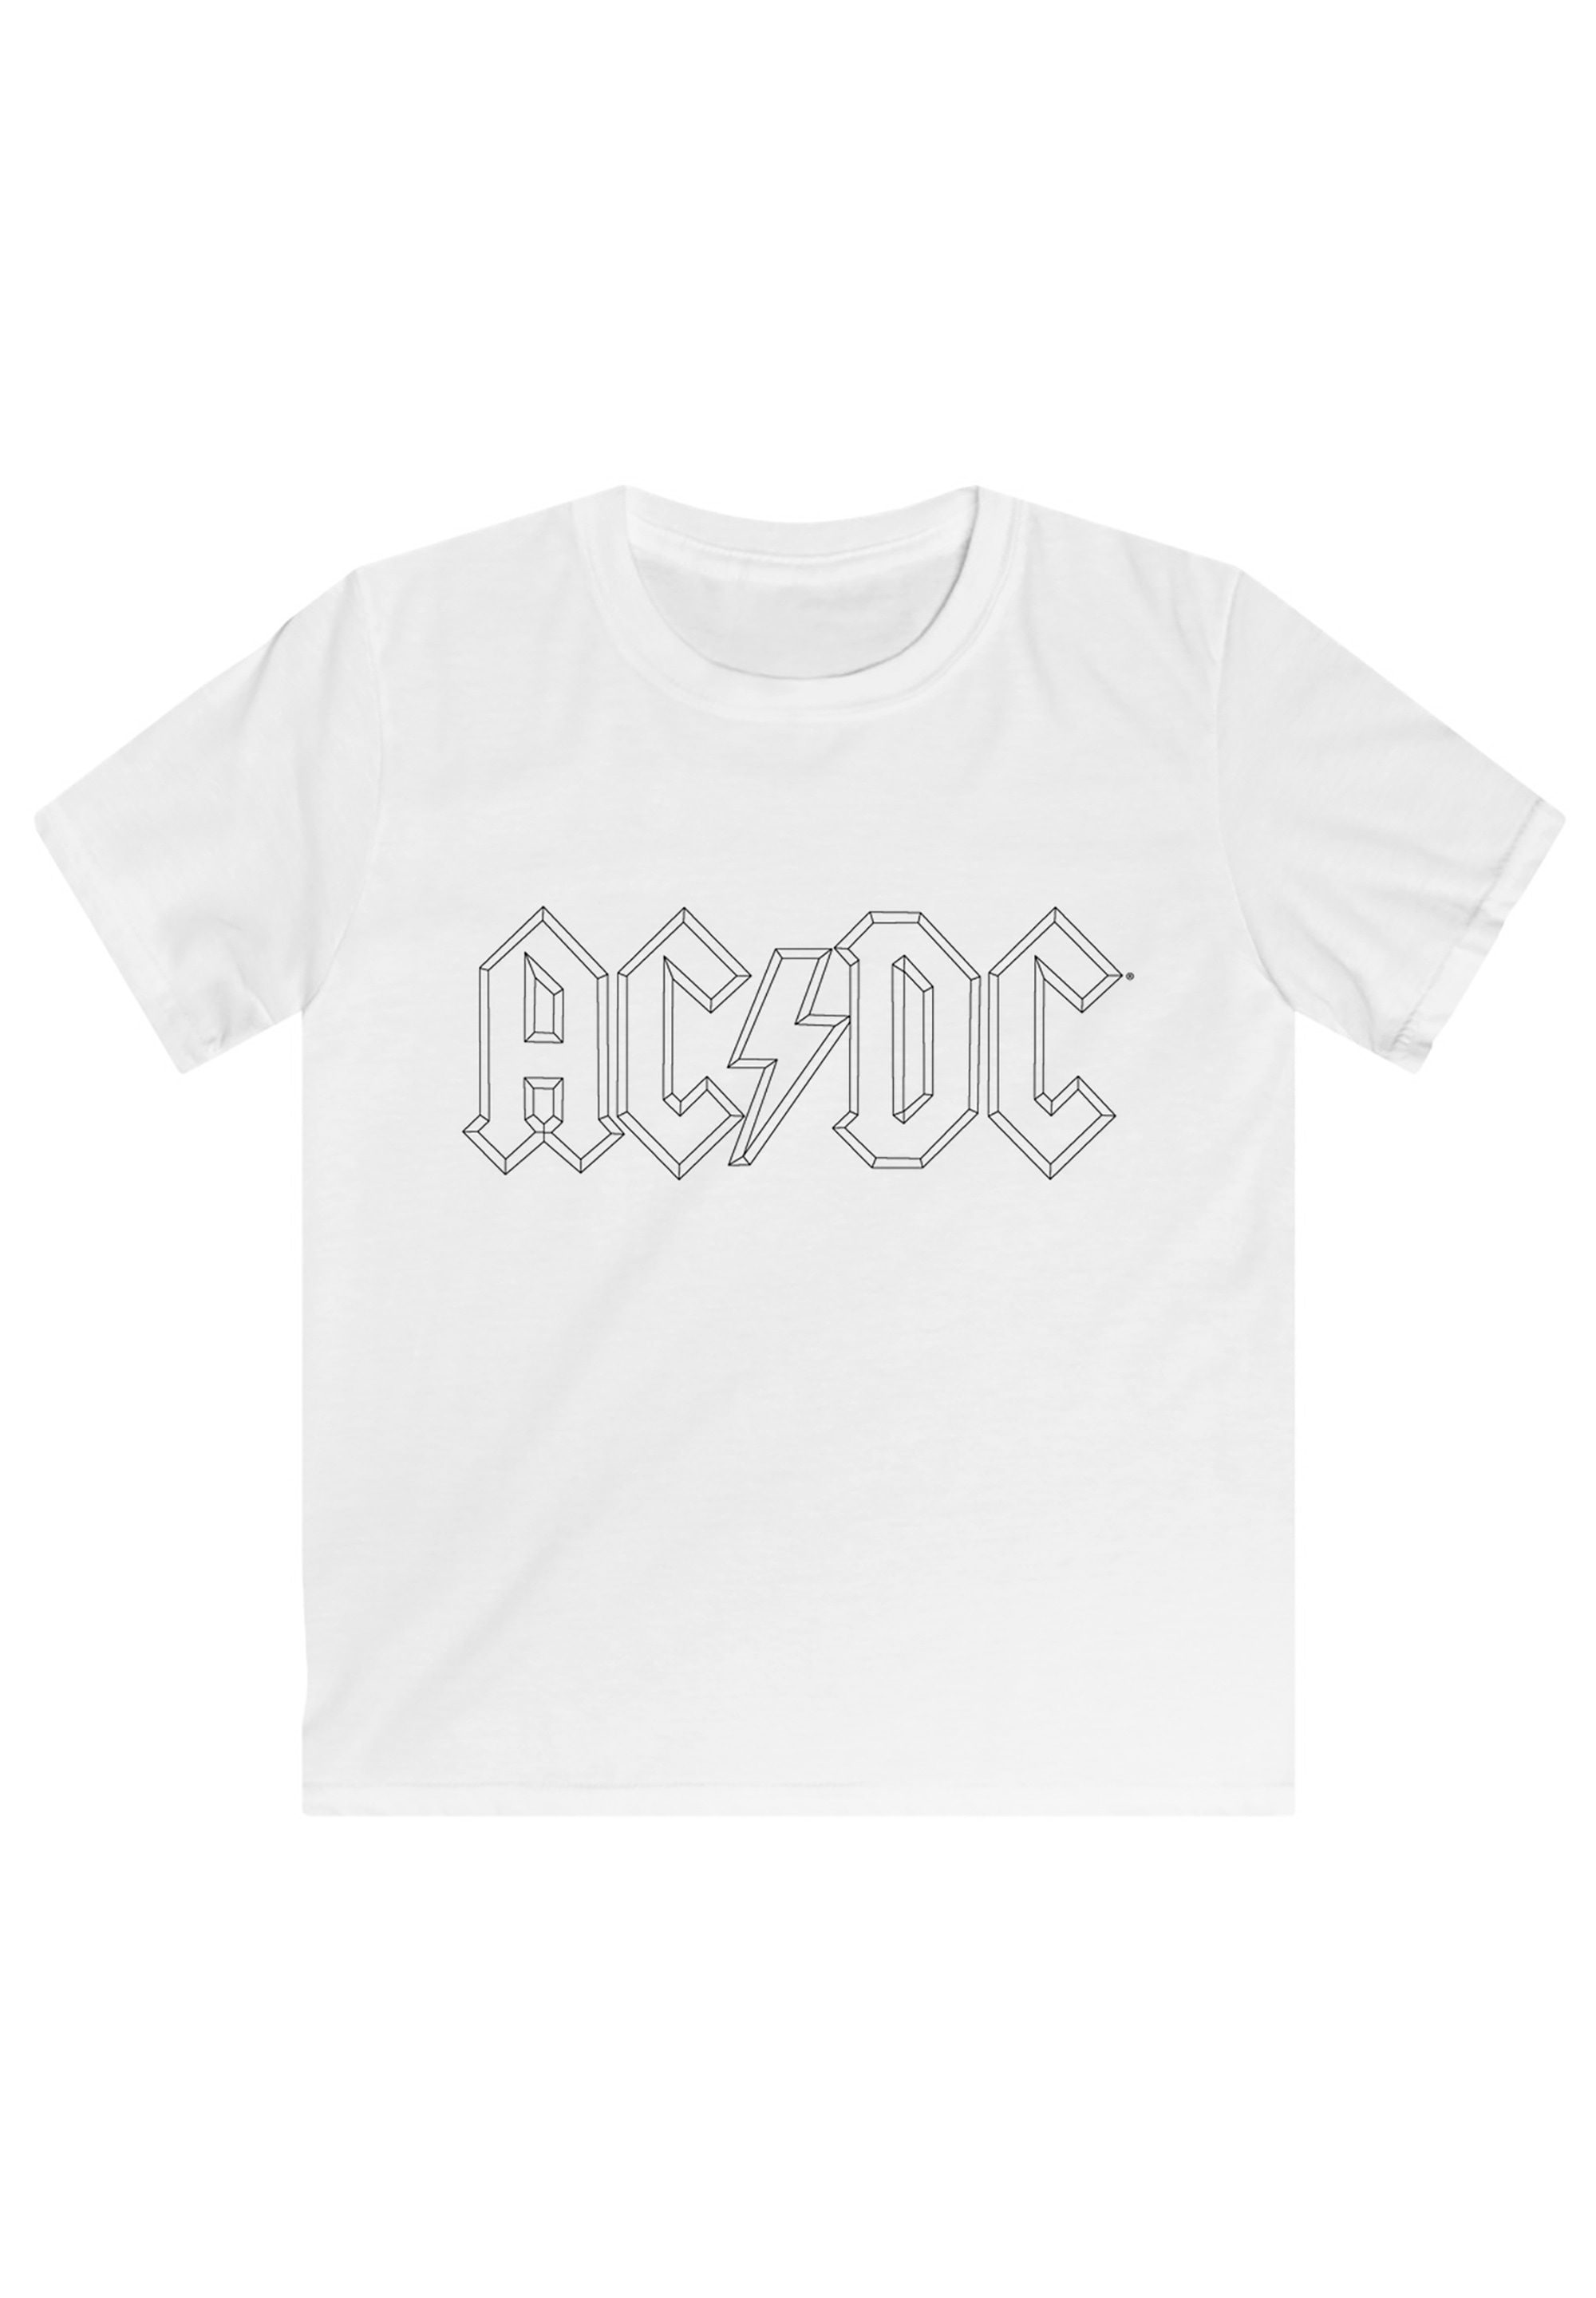 F4NT4STIC T-Shirt | Unisex »ACDC Musik - Logo BAUR Rock online Merch,Jungen,Mädchen,Bandshirt Kinder,Premium Merch«, Premium Outline Black Metal Fan kaufen